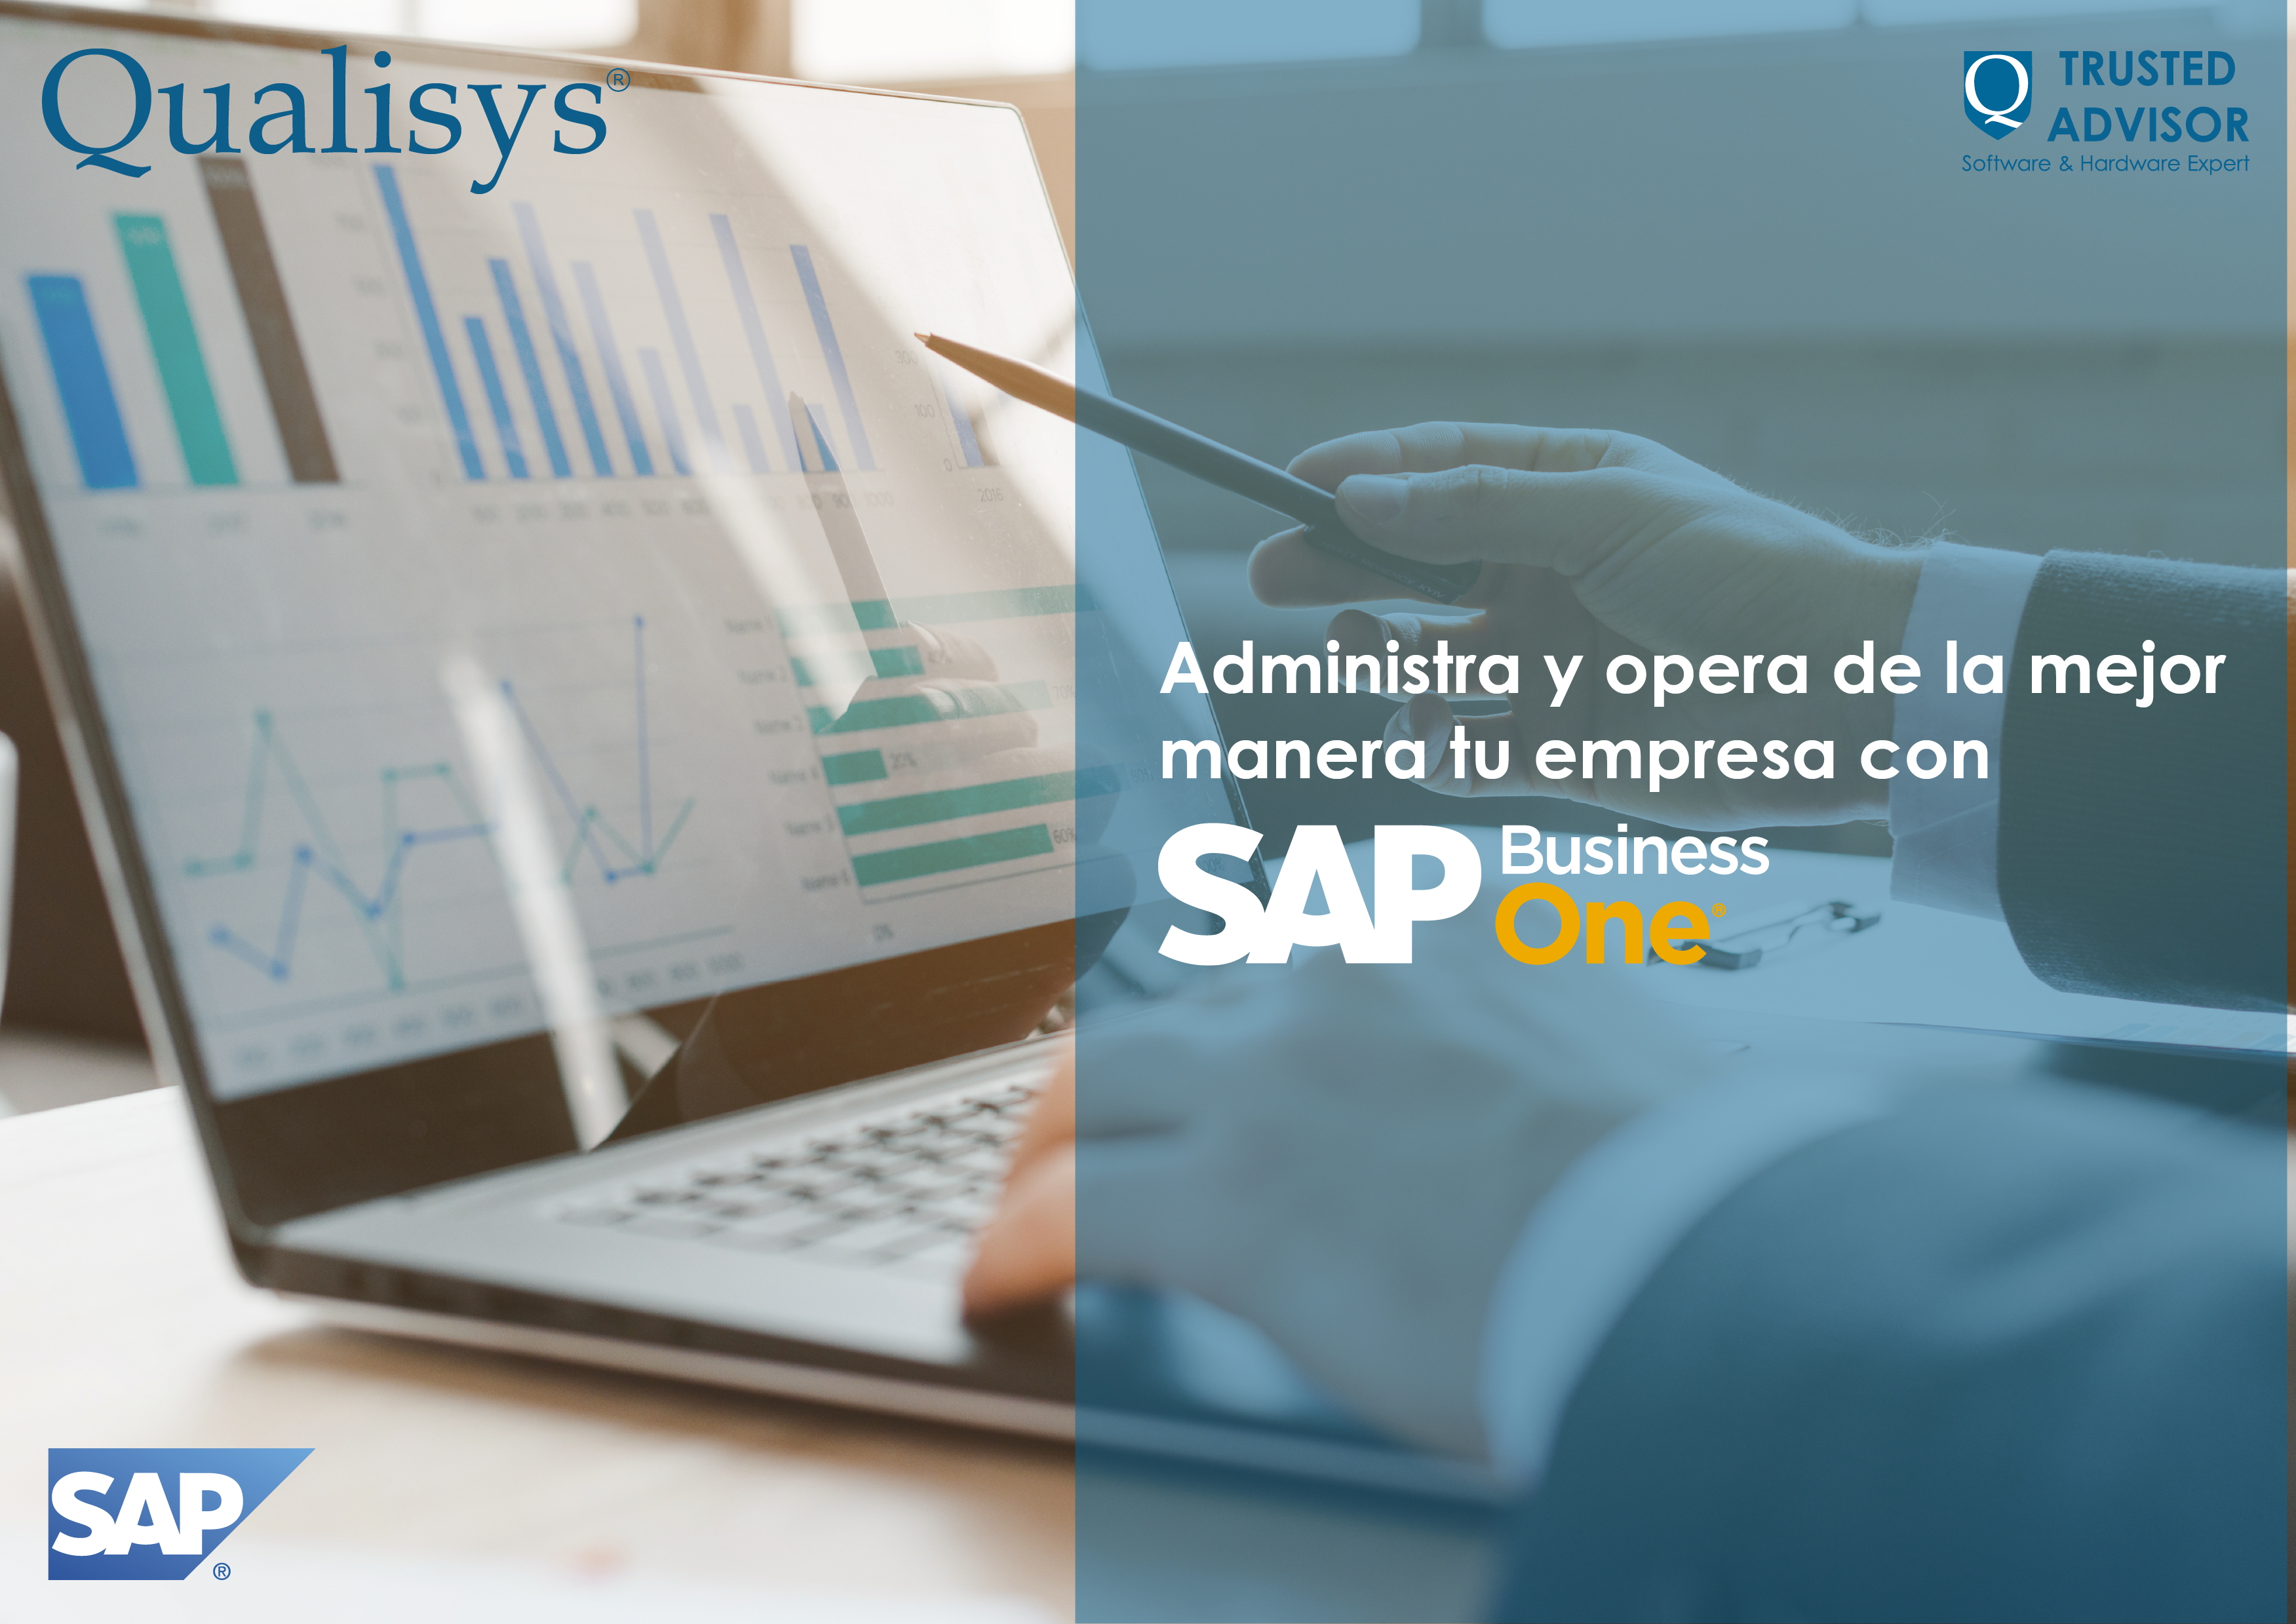 ¿Cómo puede ayudar SAP Business One en las finanzas de mi empresa? - Image